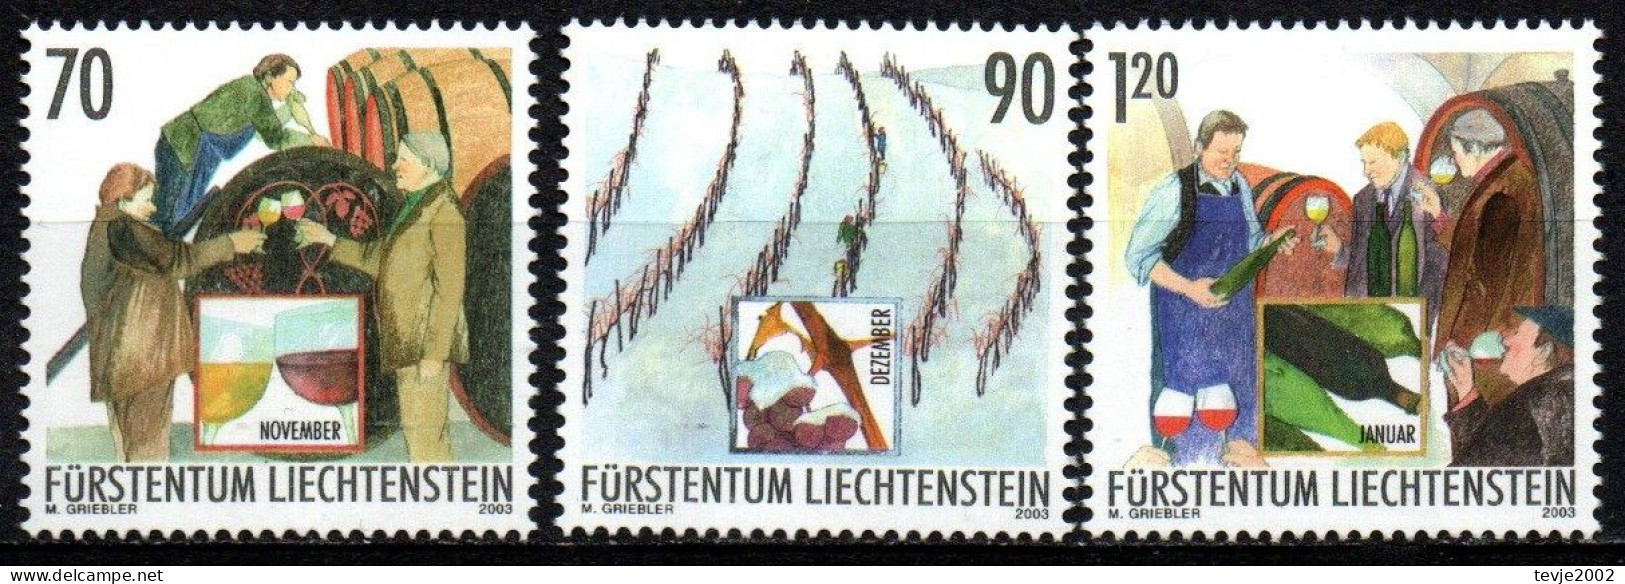 Liechtenstein 2003 - Mi.Nr. 1333 - 1335 - Postfrisch MNH - Weinbau Winzer Wine Growing Winemaker - Landwirtschaft